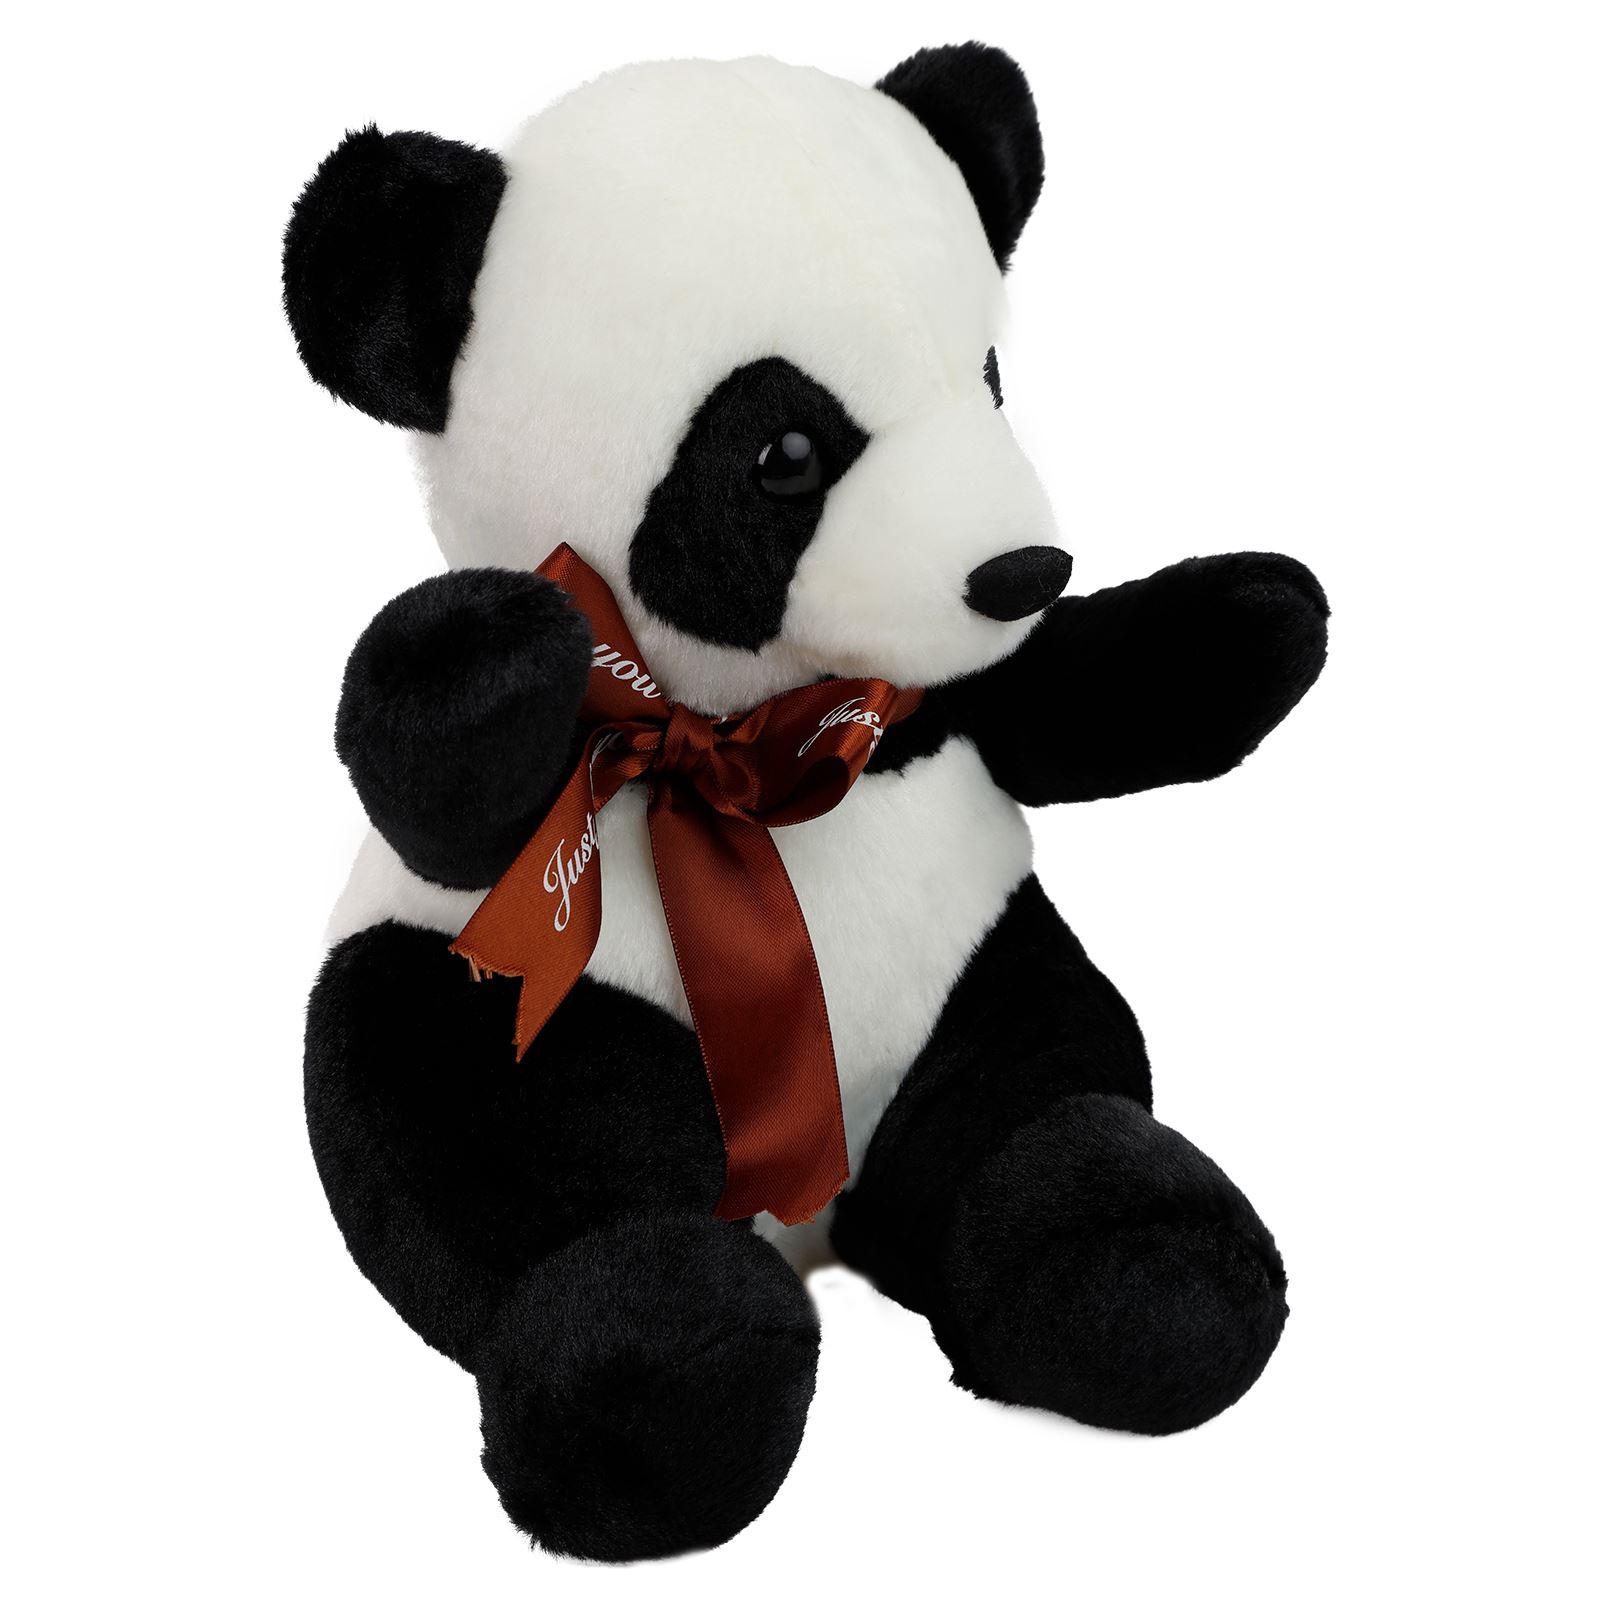 Can Oyuncak Peluş Panda Siyah-Beyaz